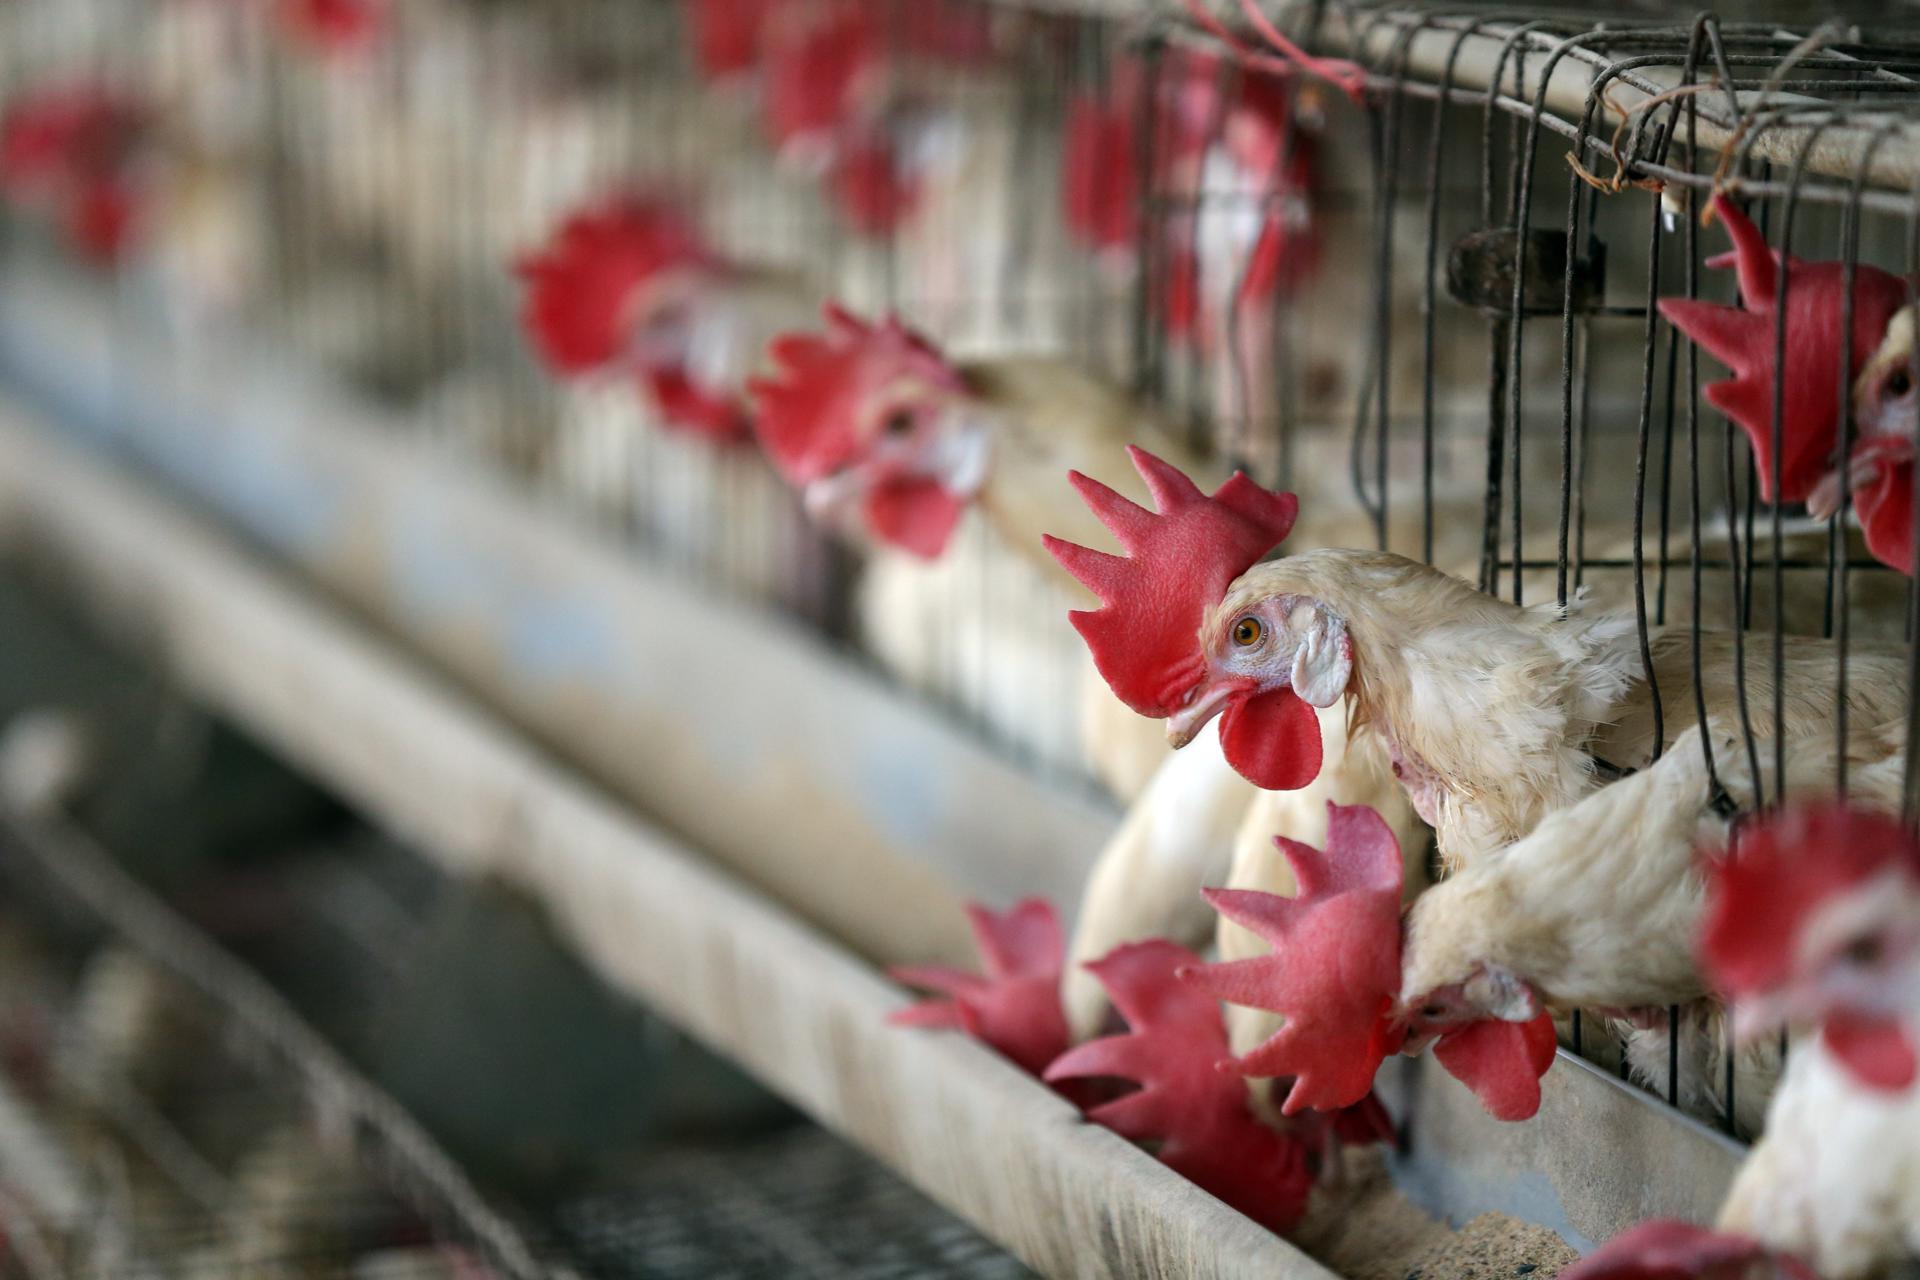 La gripe aviar es mortal para las aves. Como hasta el presente, no se ha identificado cura para combatir esta enfermedad, se deben sacrificar los animales contagiados. Imagen de archivo. EFE/EPA/RAMINDER PAL SINGH
